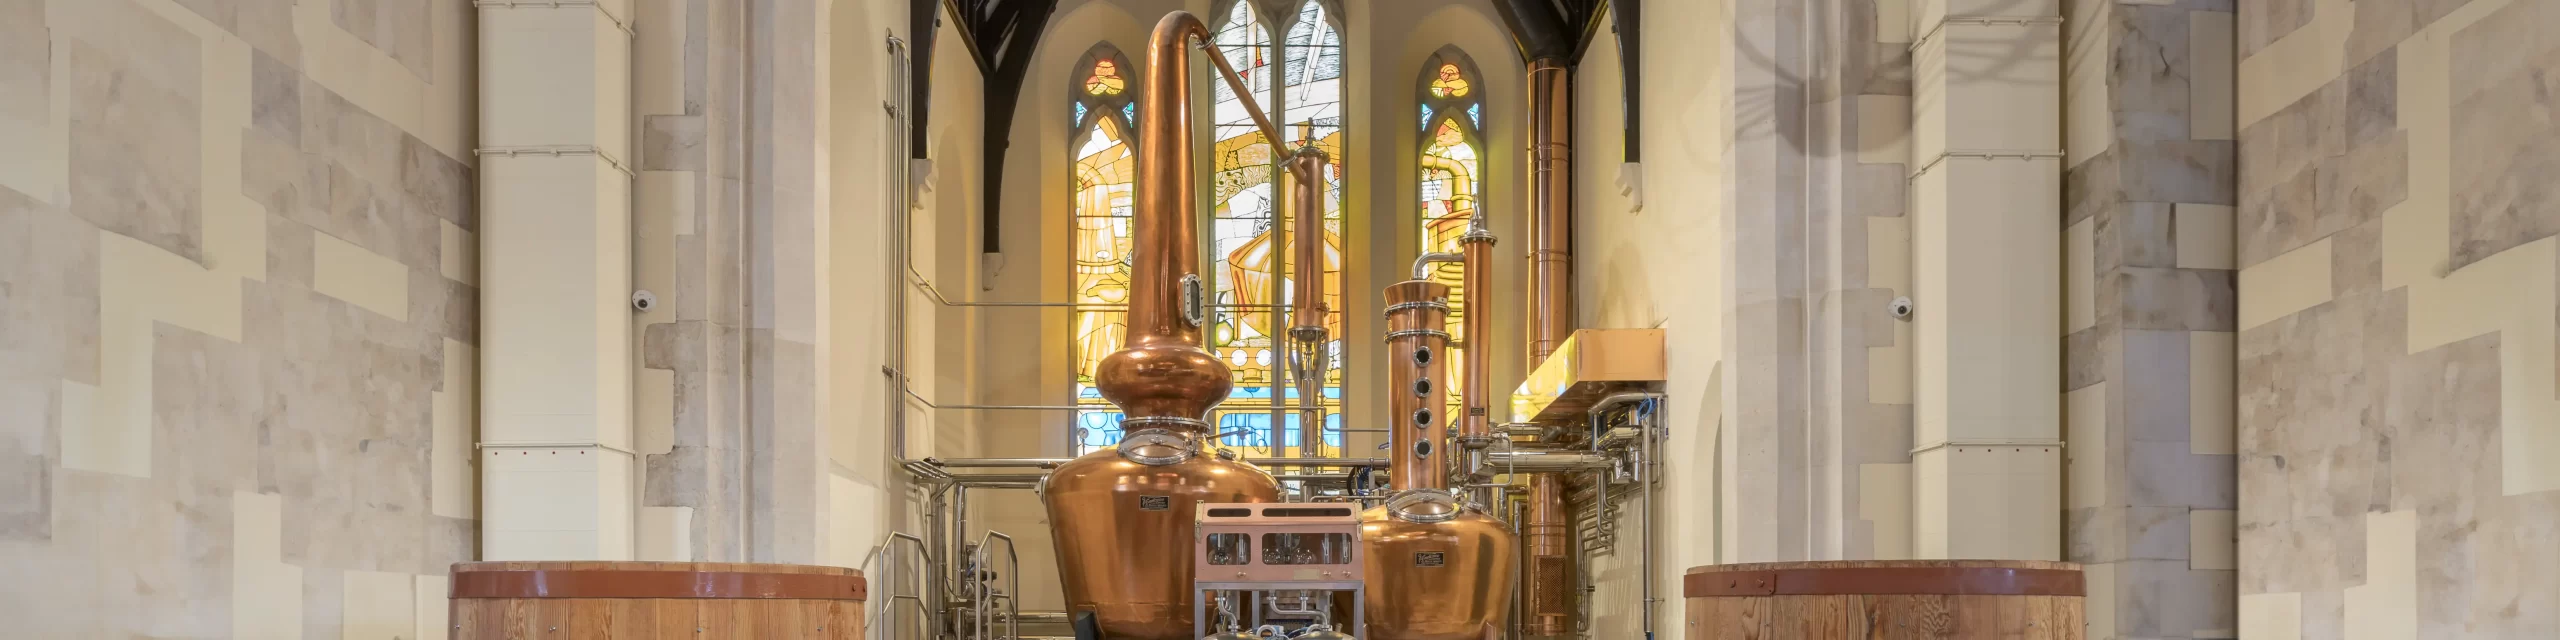 Pearse Lyons distillery stills